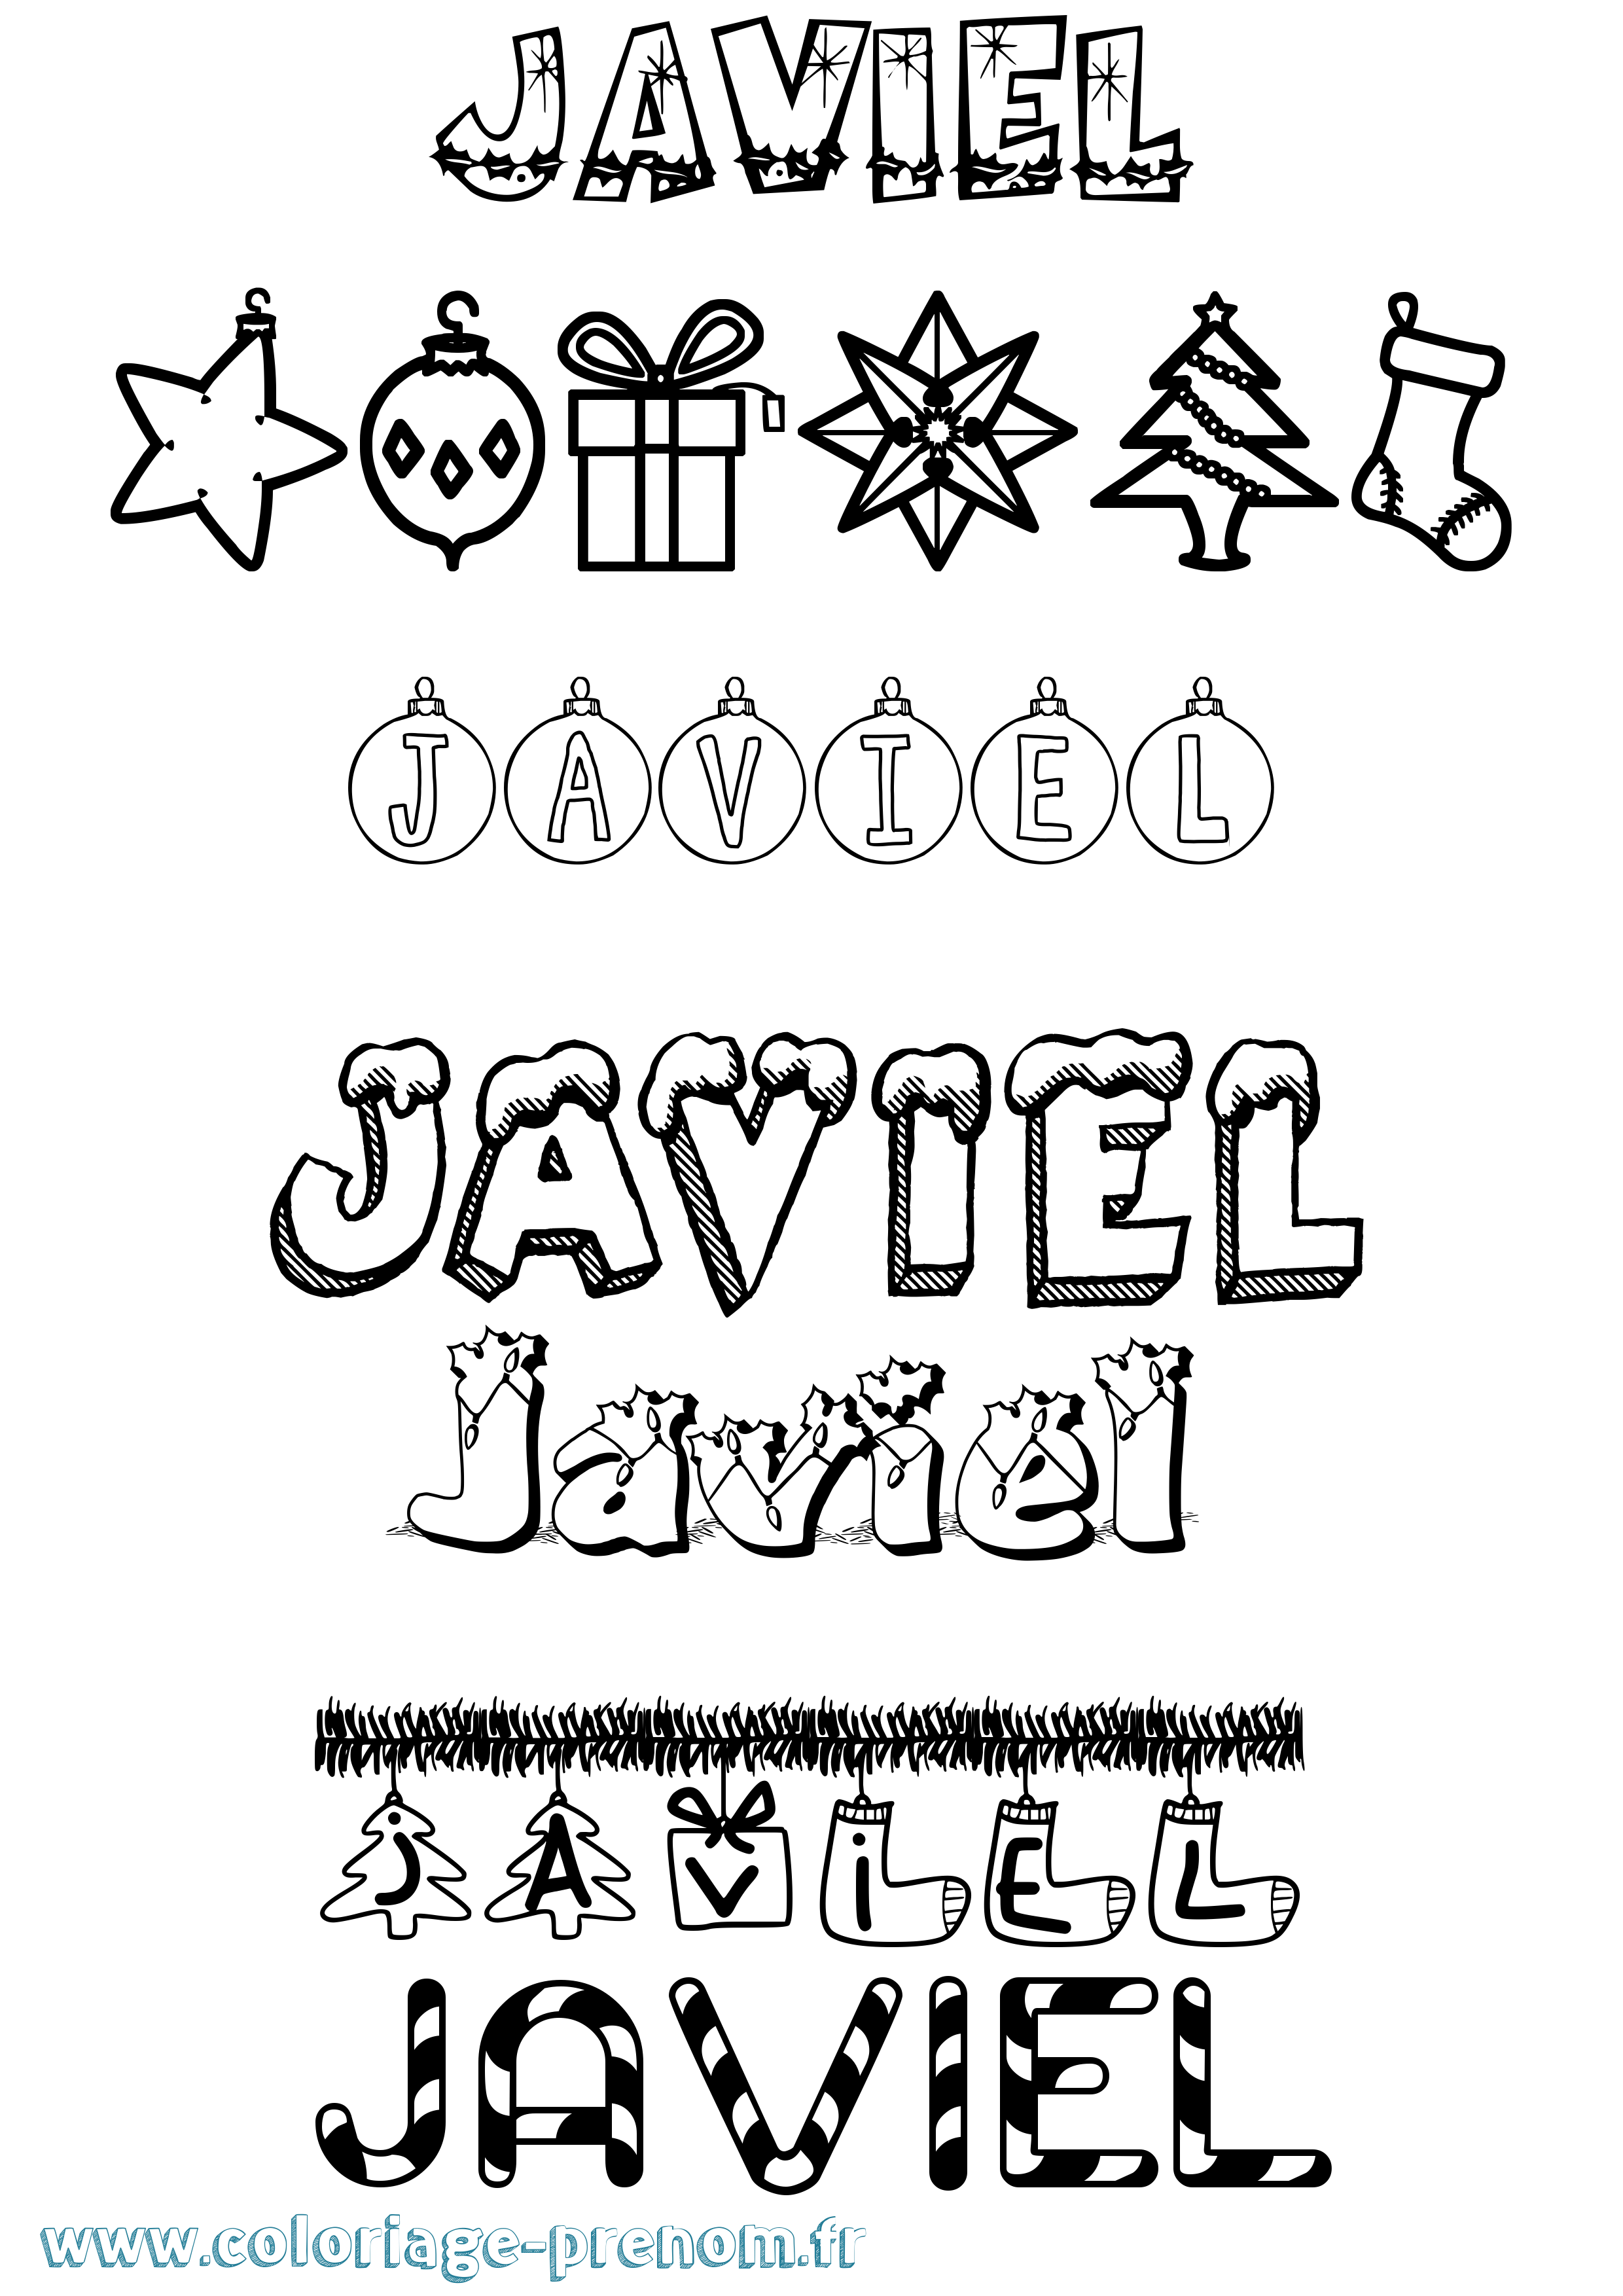 Coloriage prénom Javiel Noël